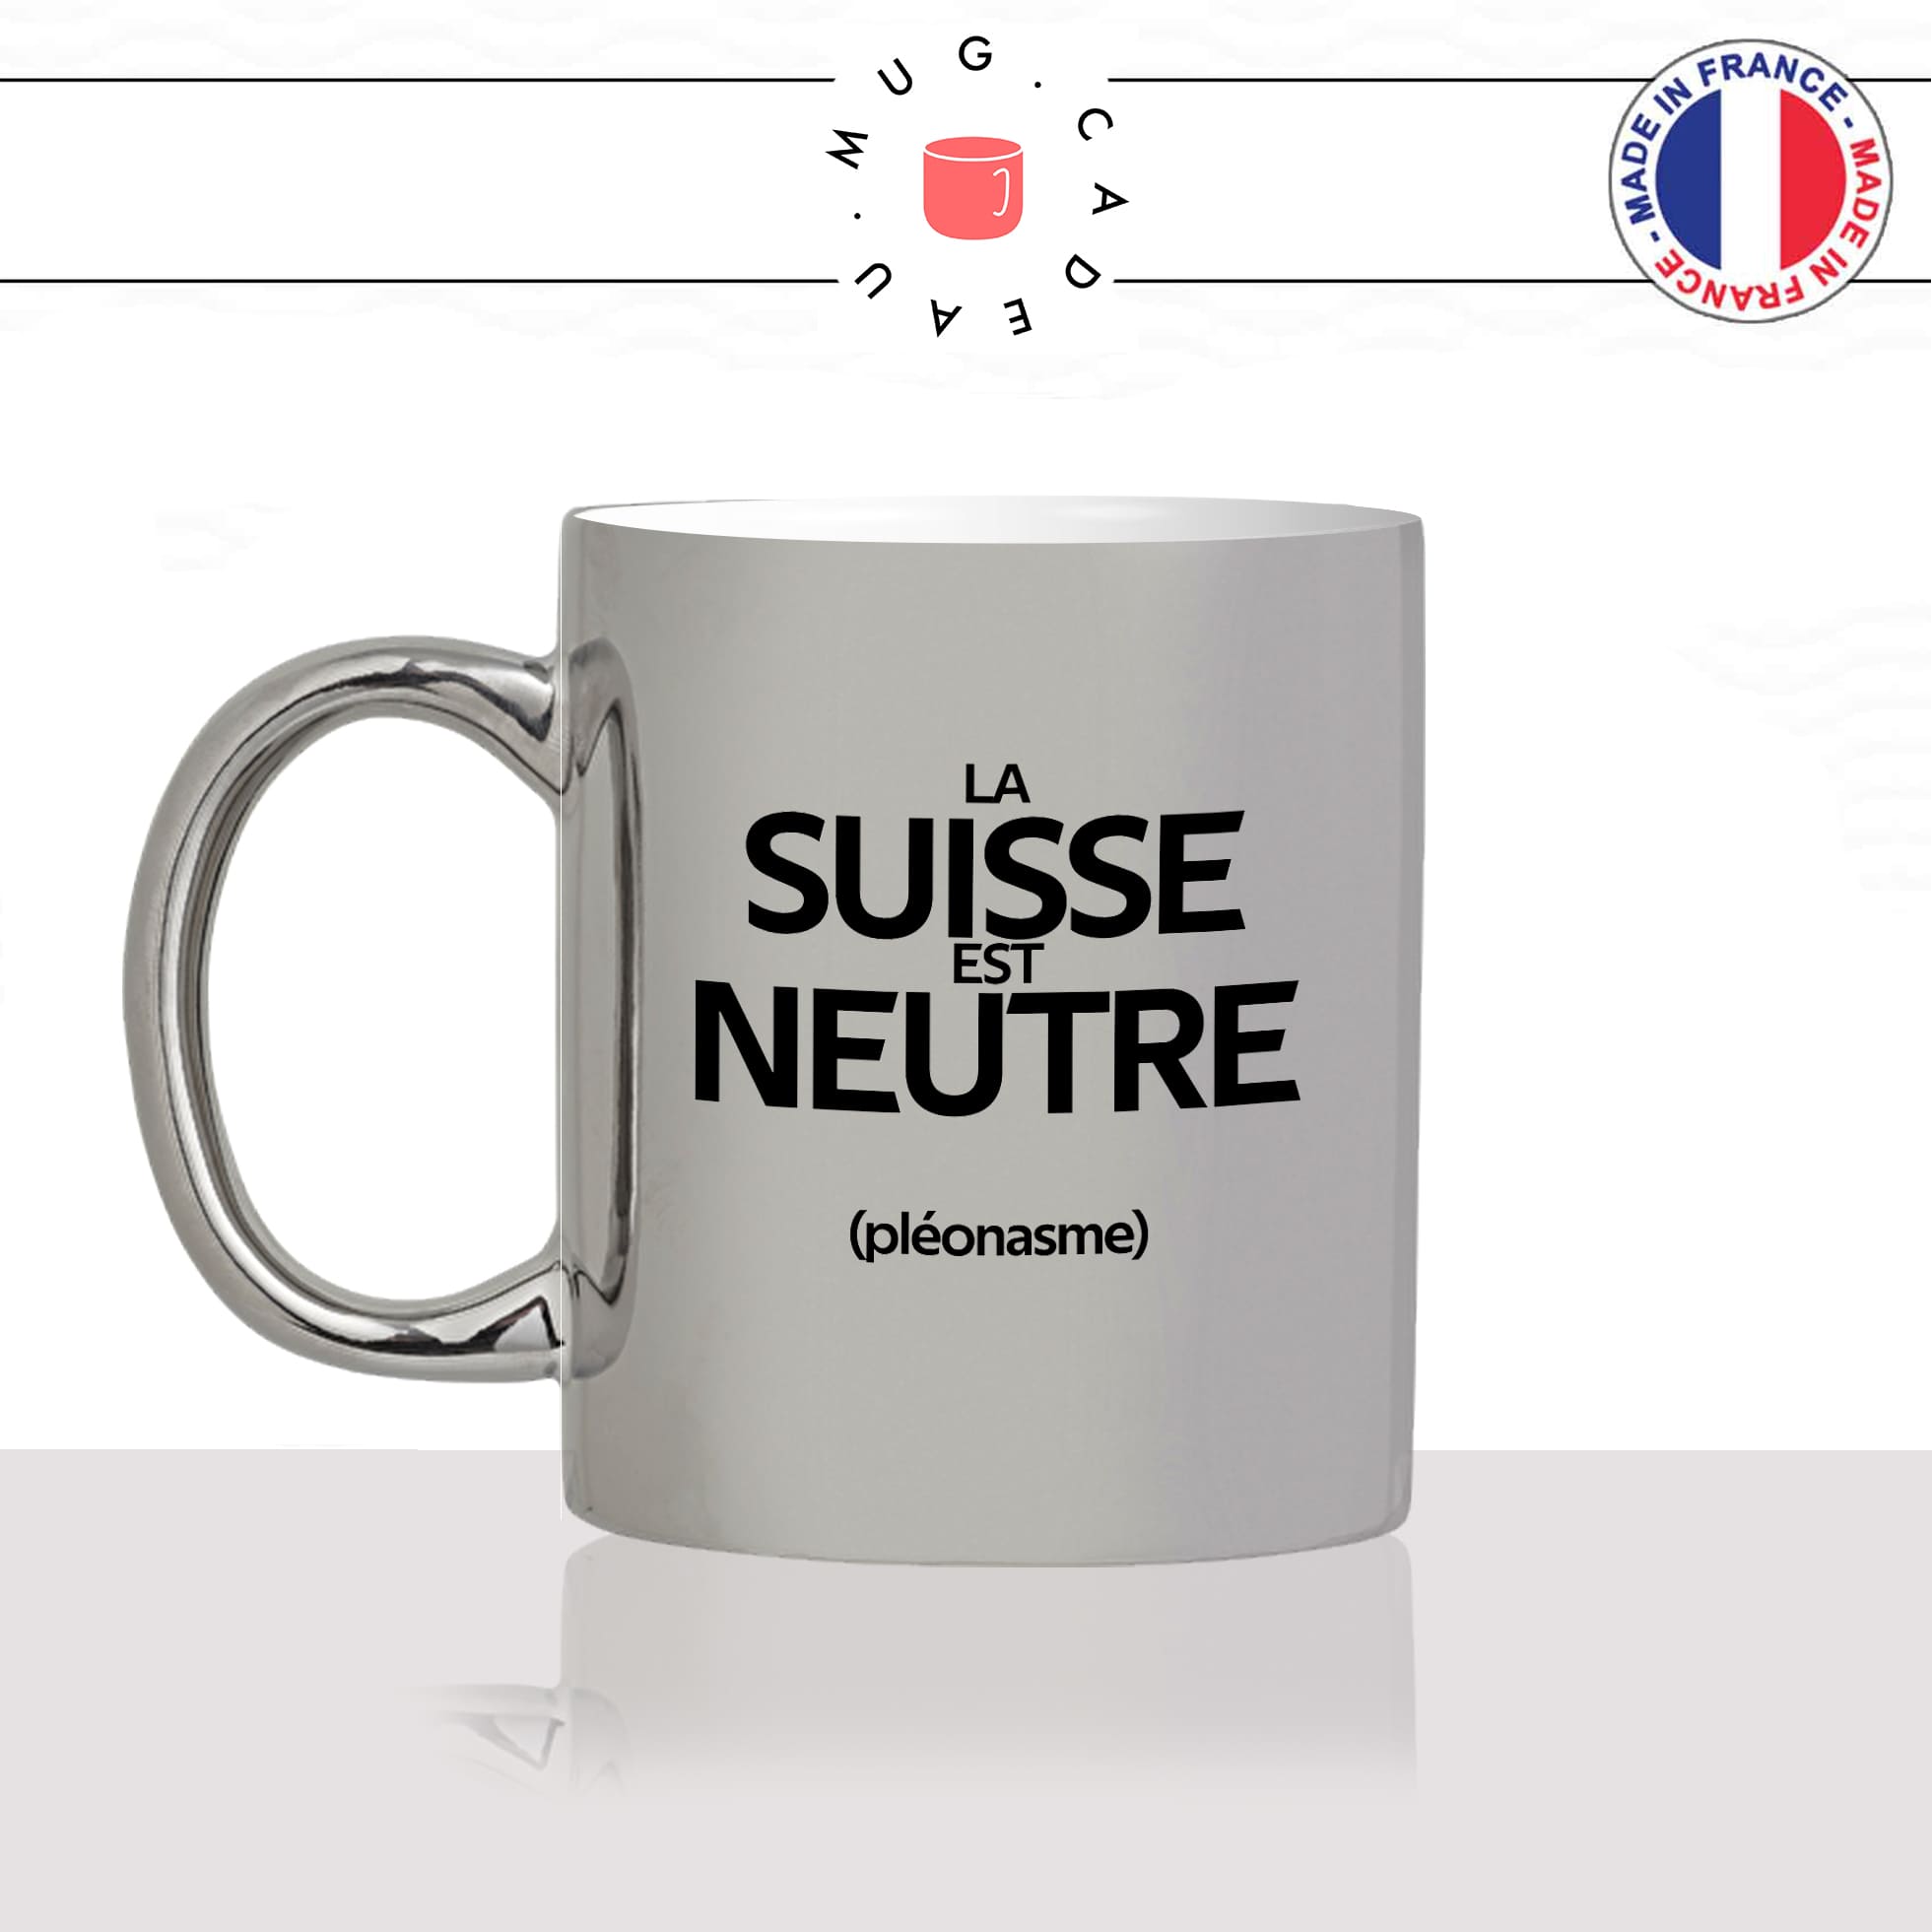 mug-tasse-argenté-argent-gris-silver-la-suisse-est-neutre-pleonasme-figure-de-style-francais-humour-fun-idée-cadeau-originale-cool